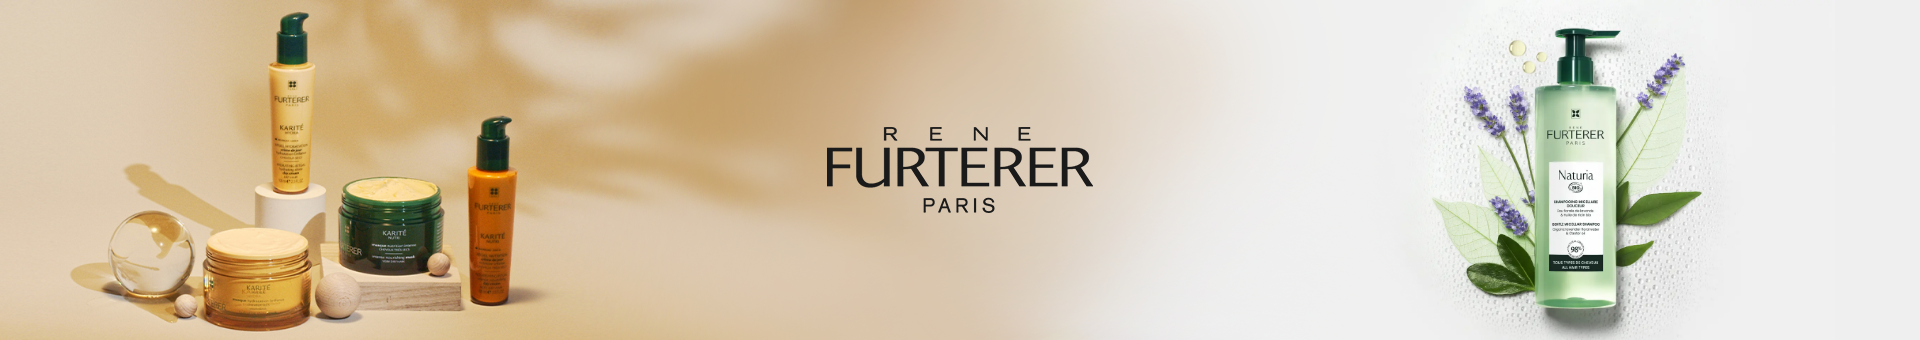 Produits Rene Furterer Paris en flacons et crèmes en parapharmacie